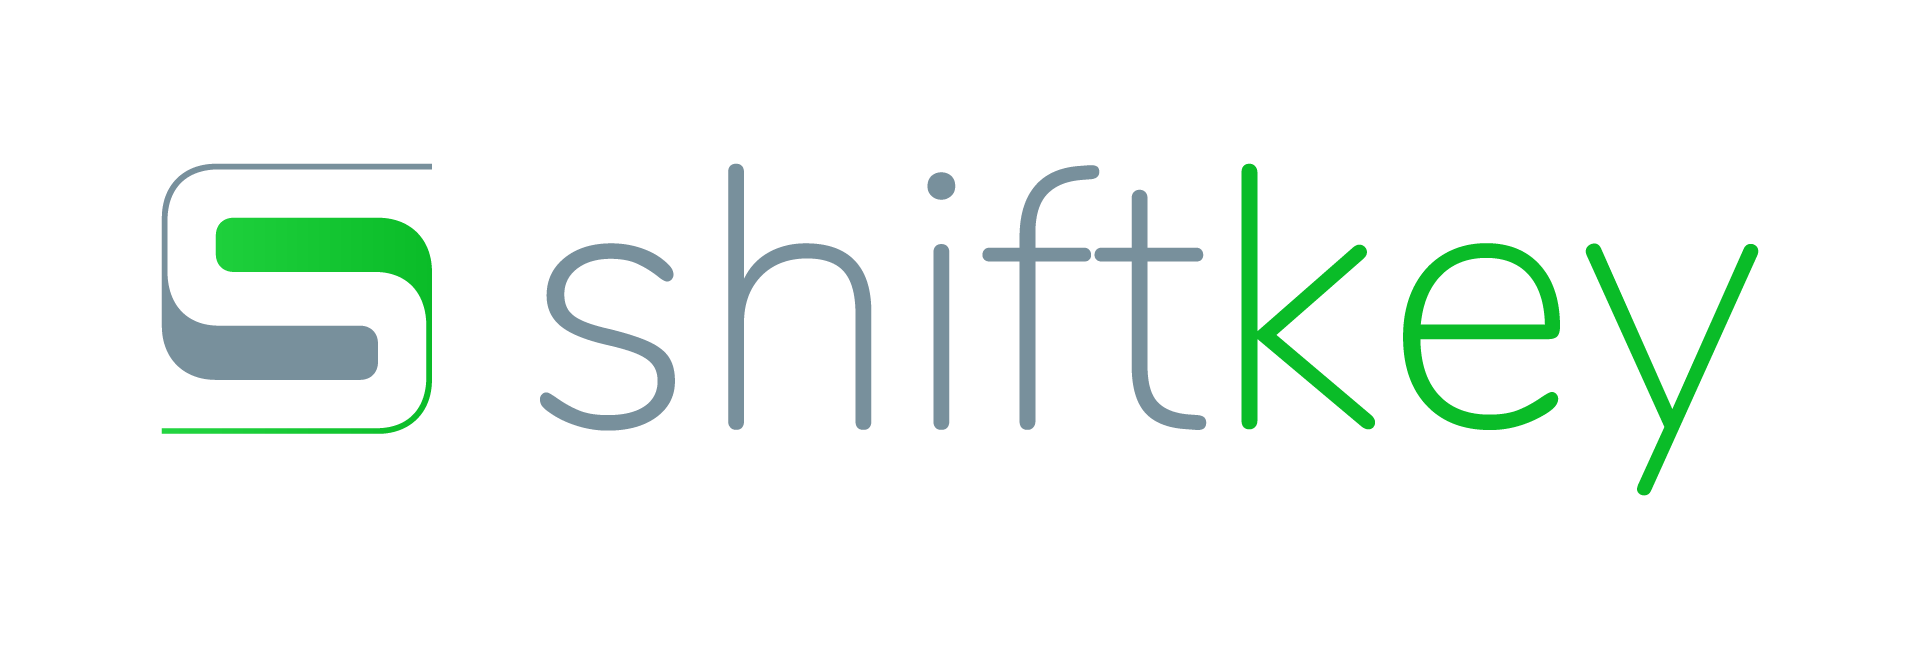 Shiftkey logo